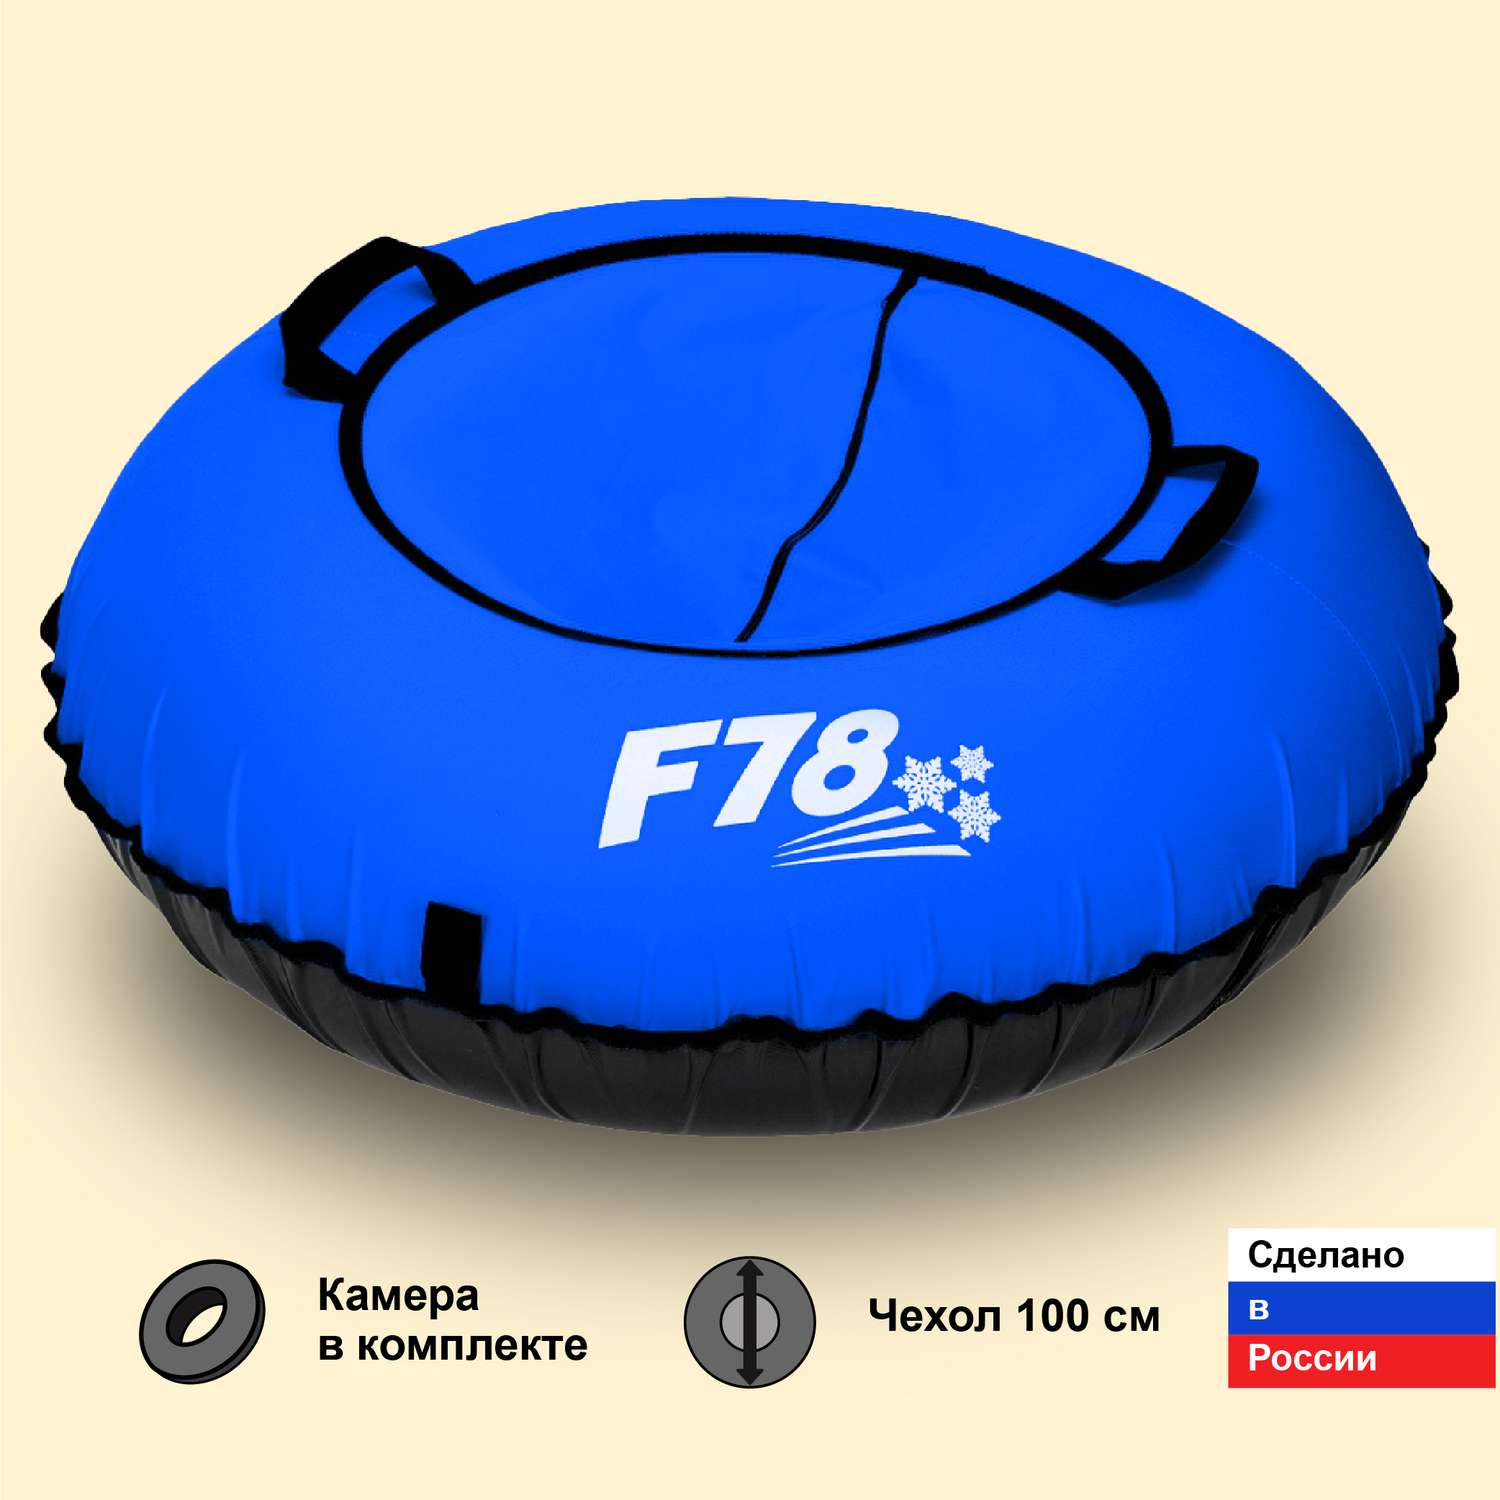 Санки надувные ватрушка F78 синяя 100 см - фото 1